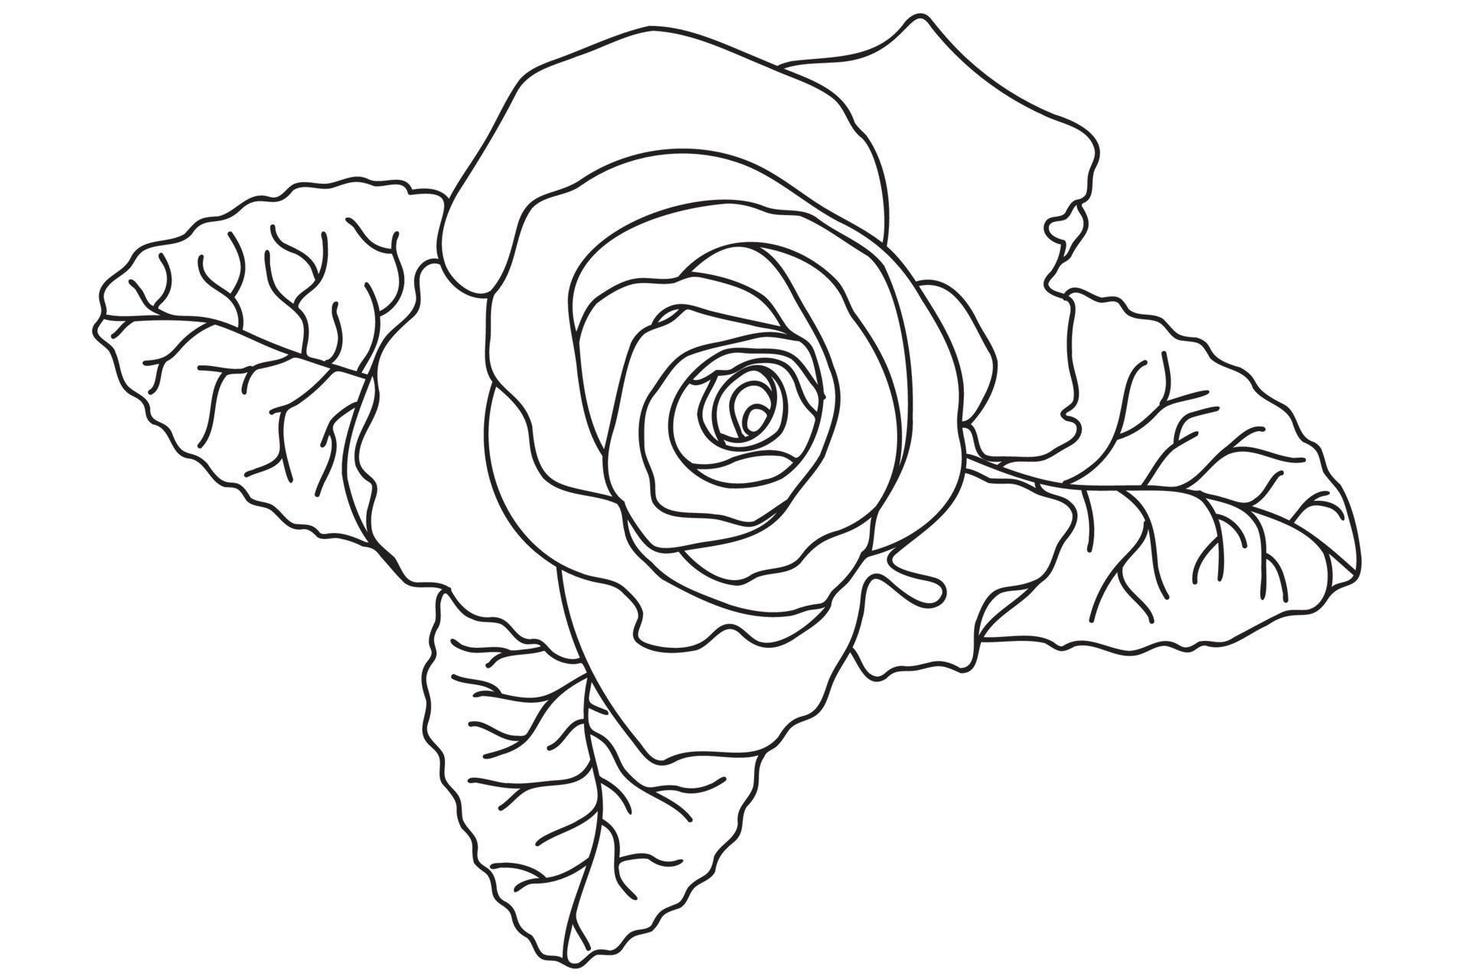 eine einzelne rose ist mit einem schwarzen umriss gezeichnet, sie ist für tätowierung, druck, karten, stoffdruck, 8. märz, valentinstag, etikett, logo und andere gelegenheiten bestimmt. vektor